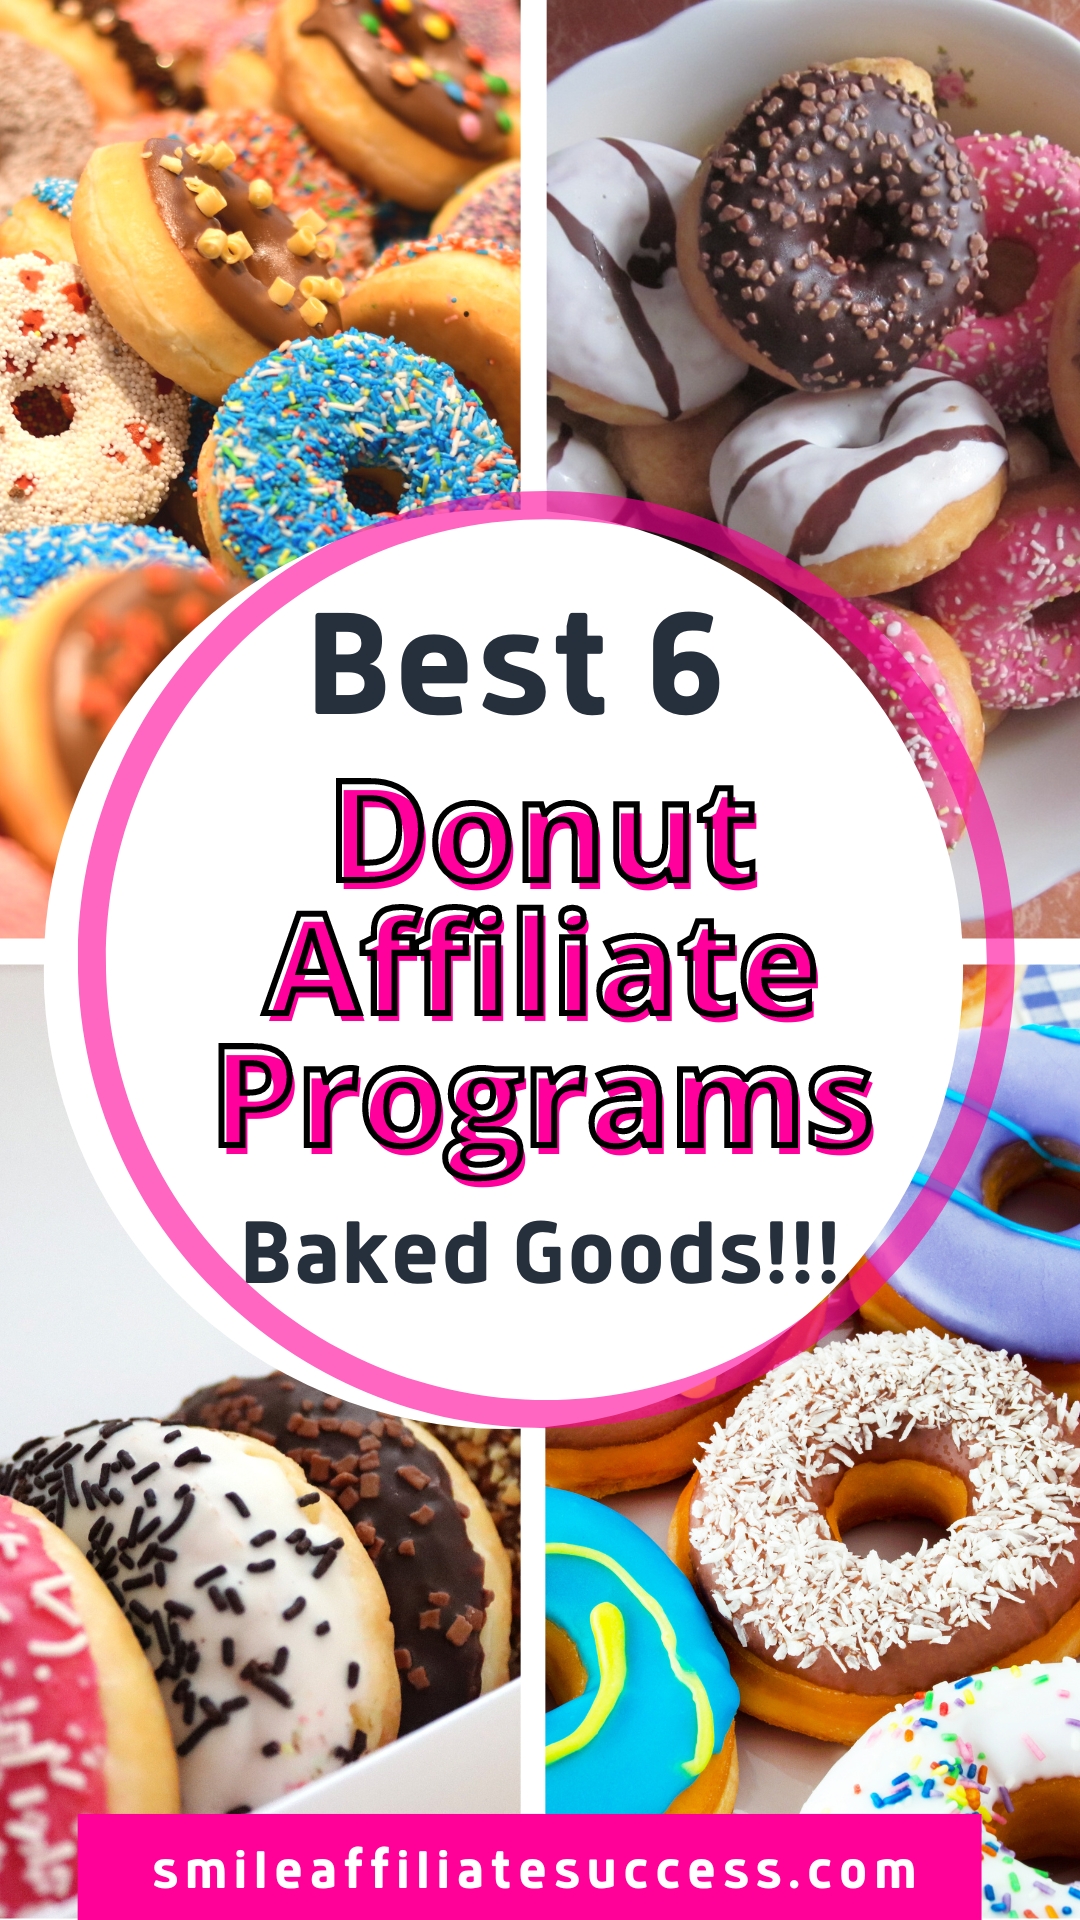 Best 6 Donut Affiliate Programs